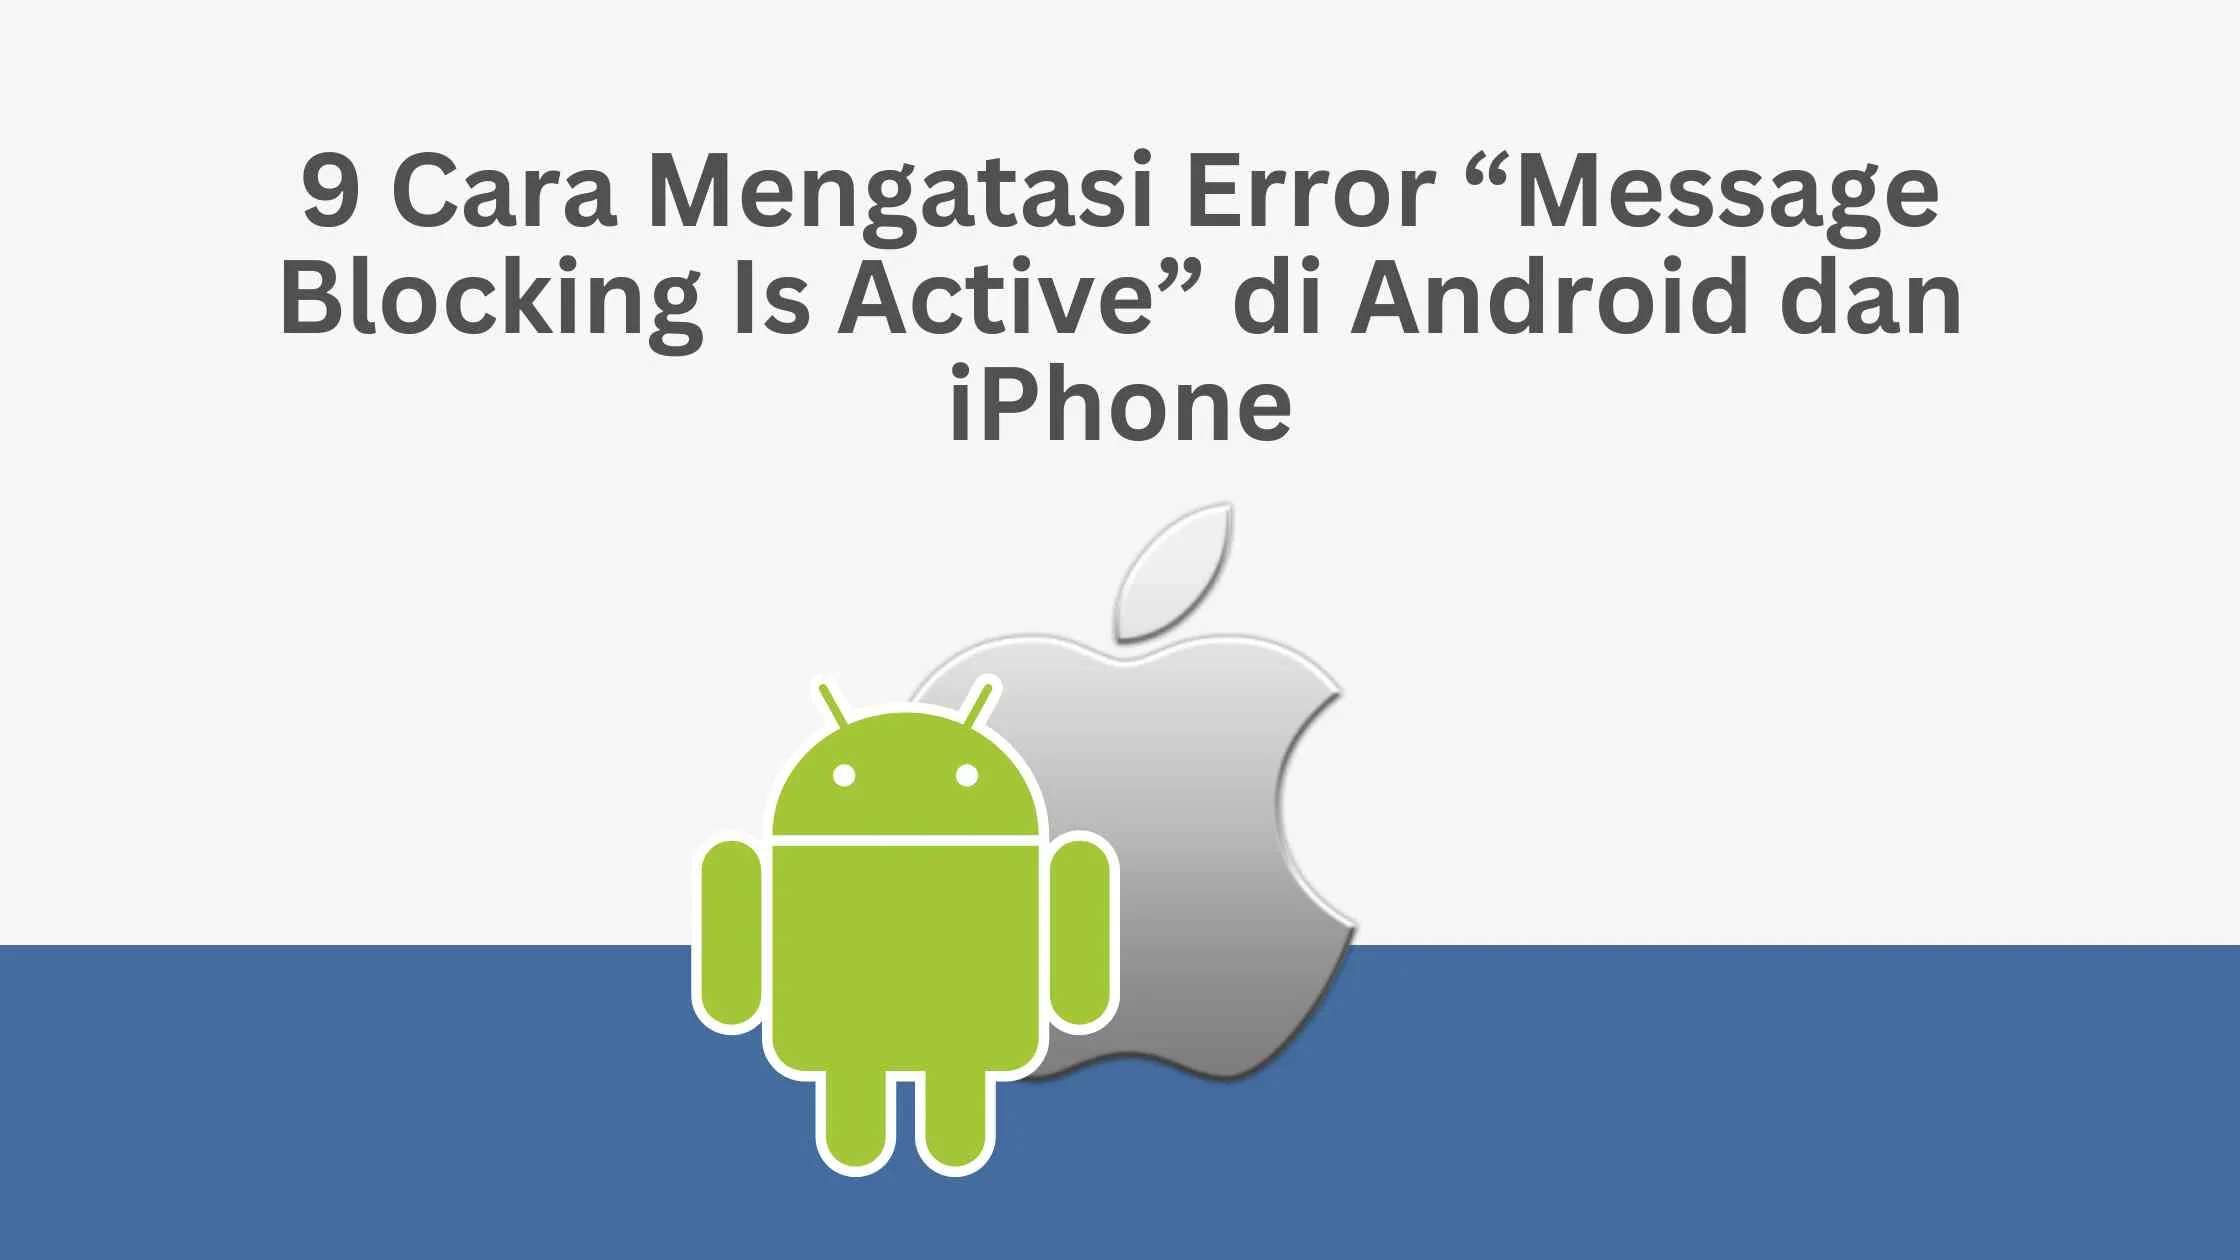 9 Cara Mengatasi Error “Message Blocking Is Active” di Android dan iPhone